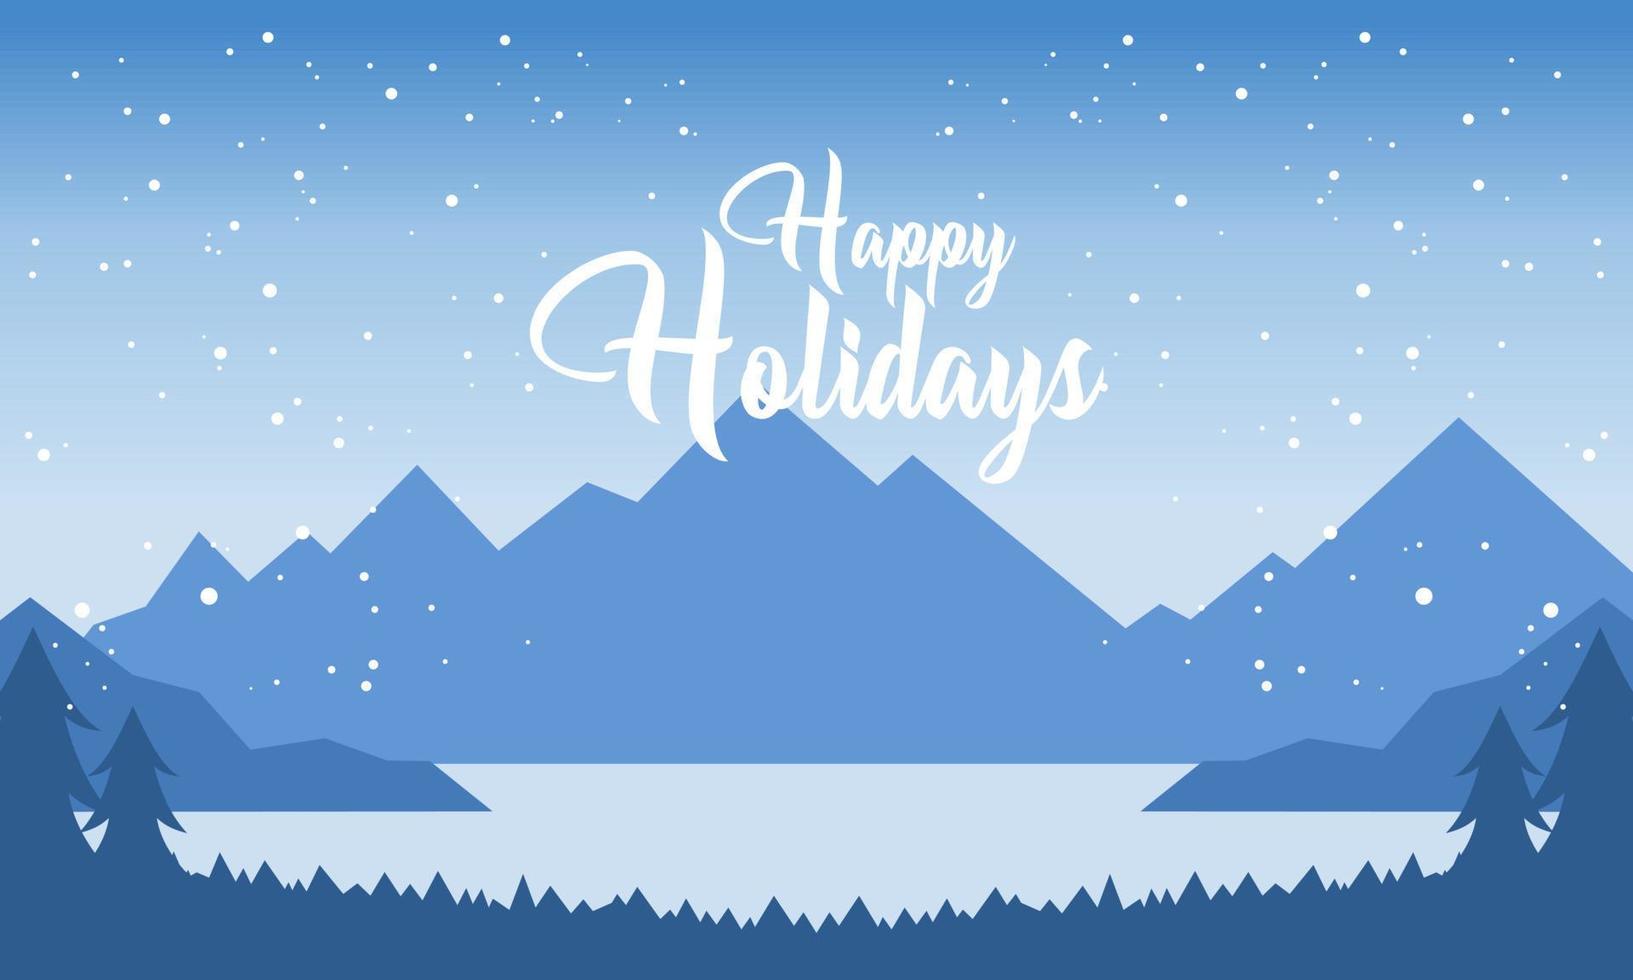 felices fiestas con montañas azules invierno nevado y bosque de pinos ilustración vectorial vector